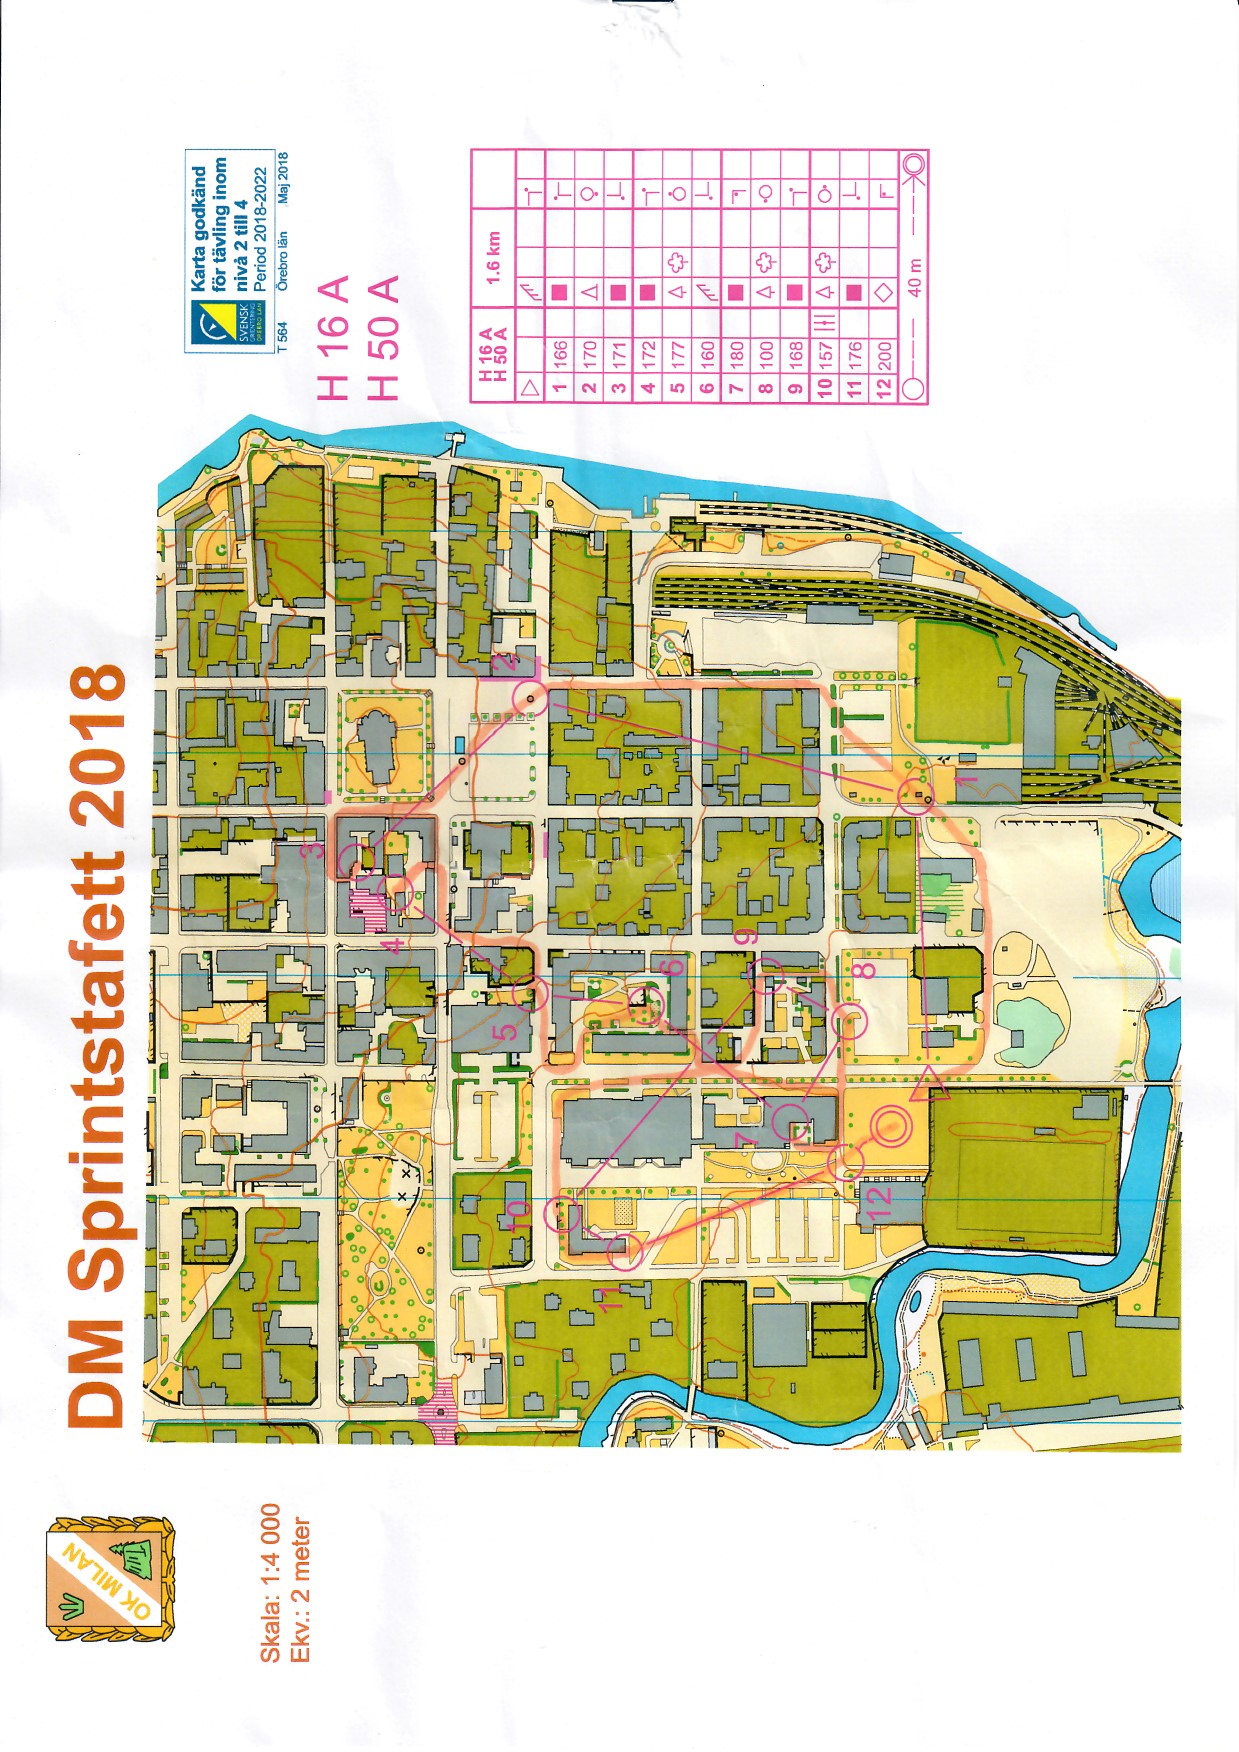 DM Sprintstafett, Örebro (10.06.2018)